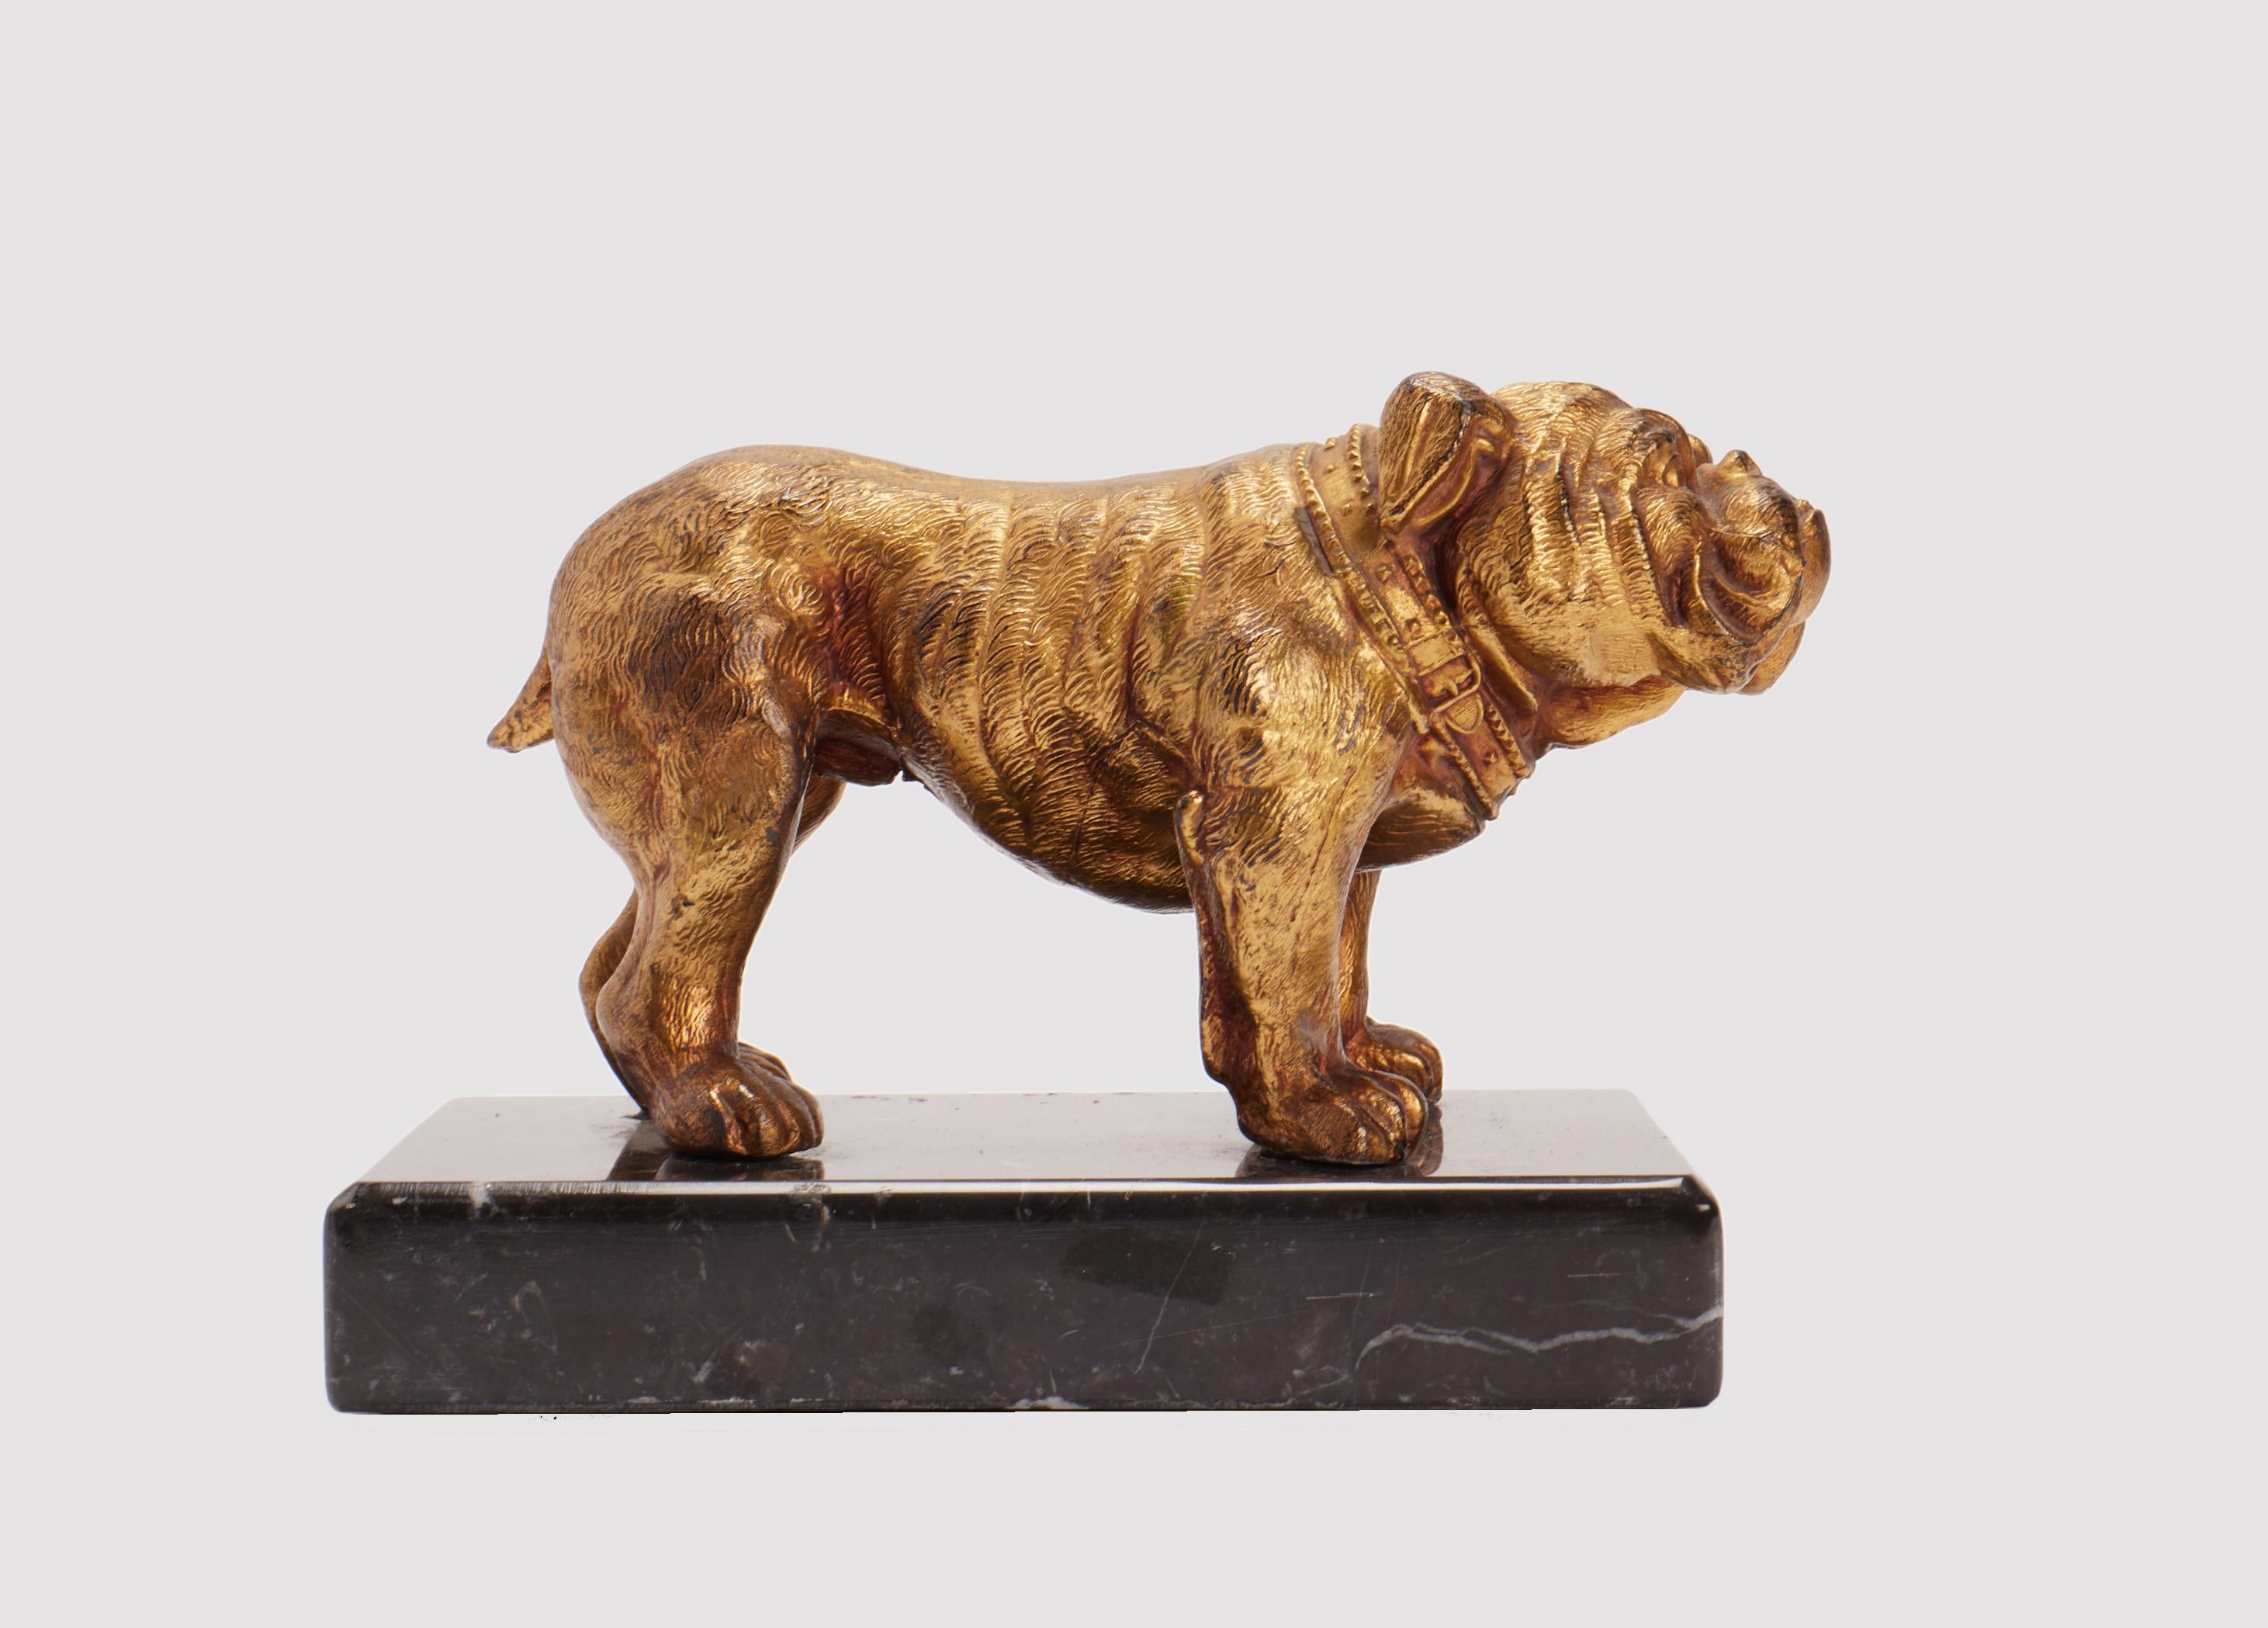 Sculpture en métal doré à l'antimoine, représentant un chien bulldog anglais, montée sur une base en marbre noir veiné. Signé J. B. America circa 1890.